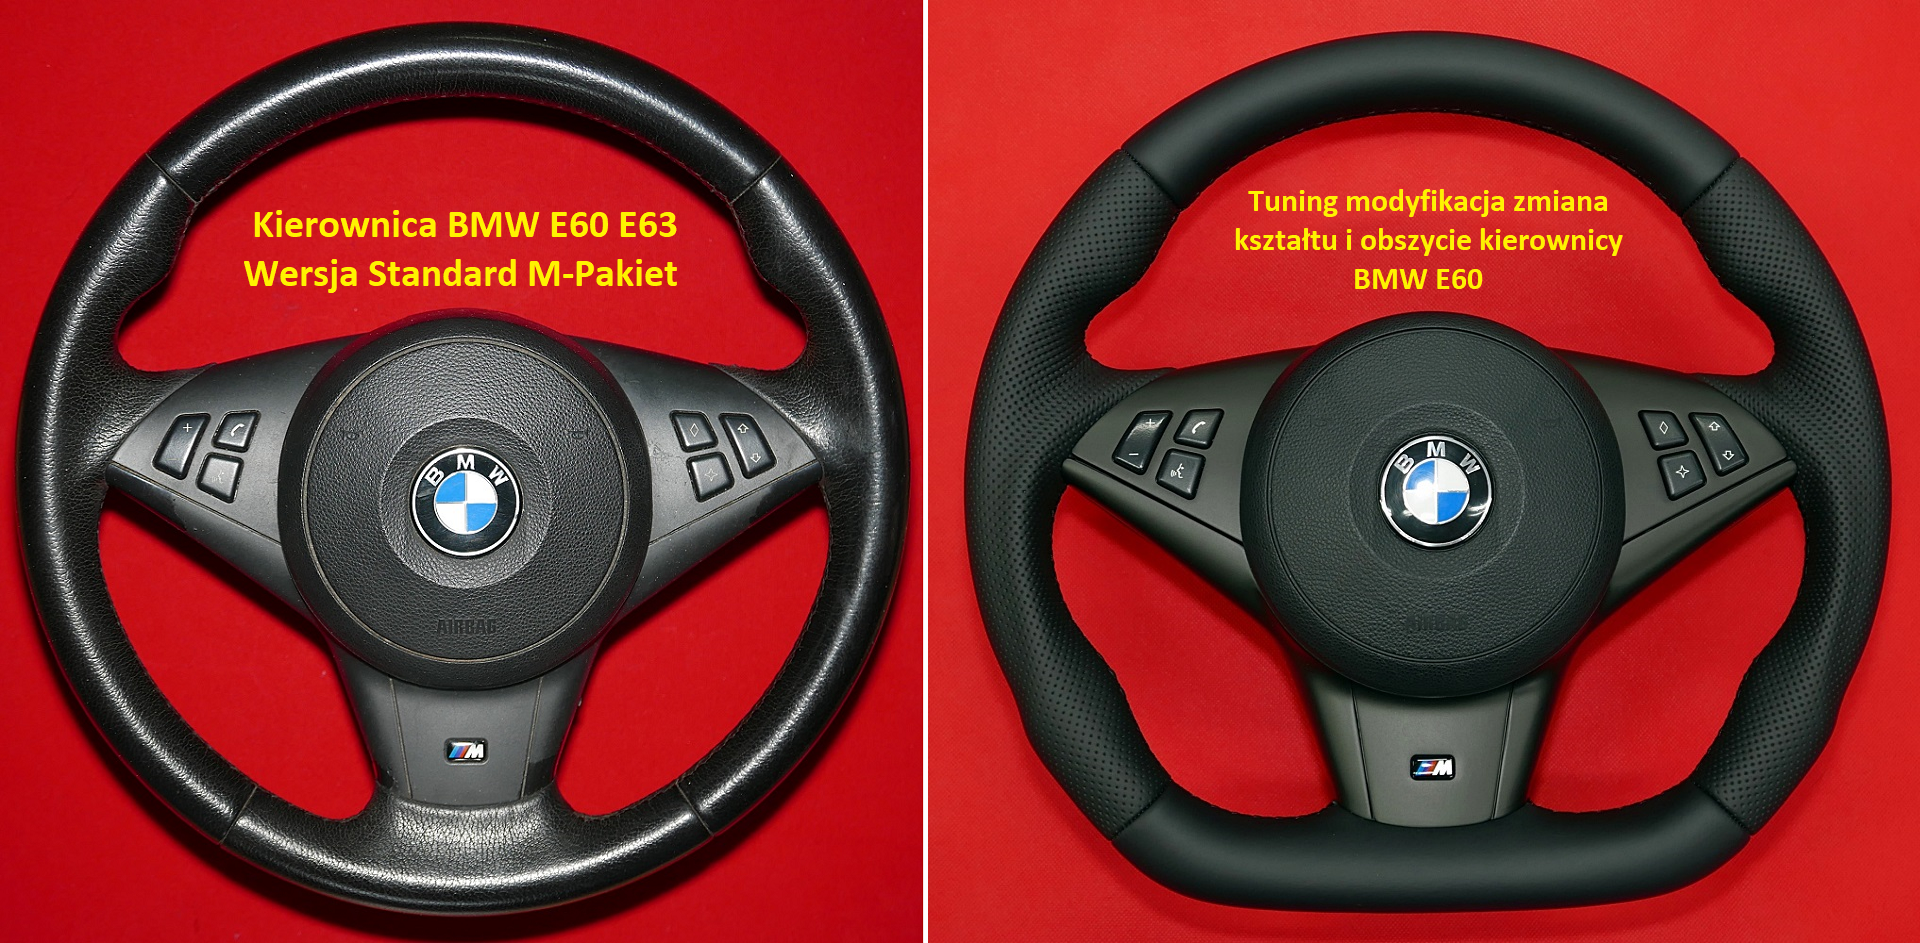 Tuning modyfikacja zmiana kształtu i obszycie kierownica BMW E60